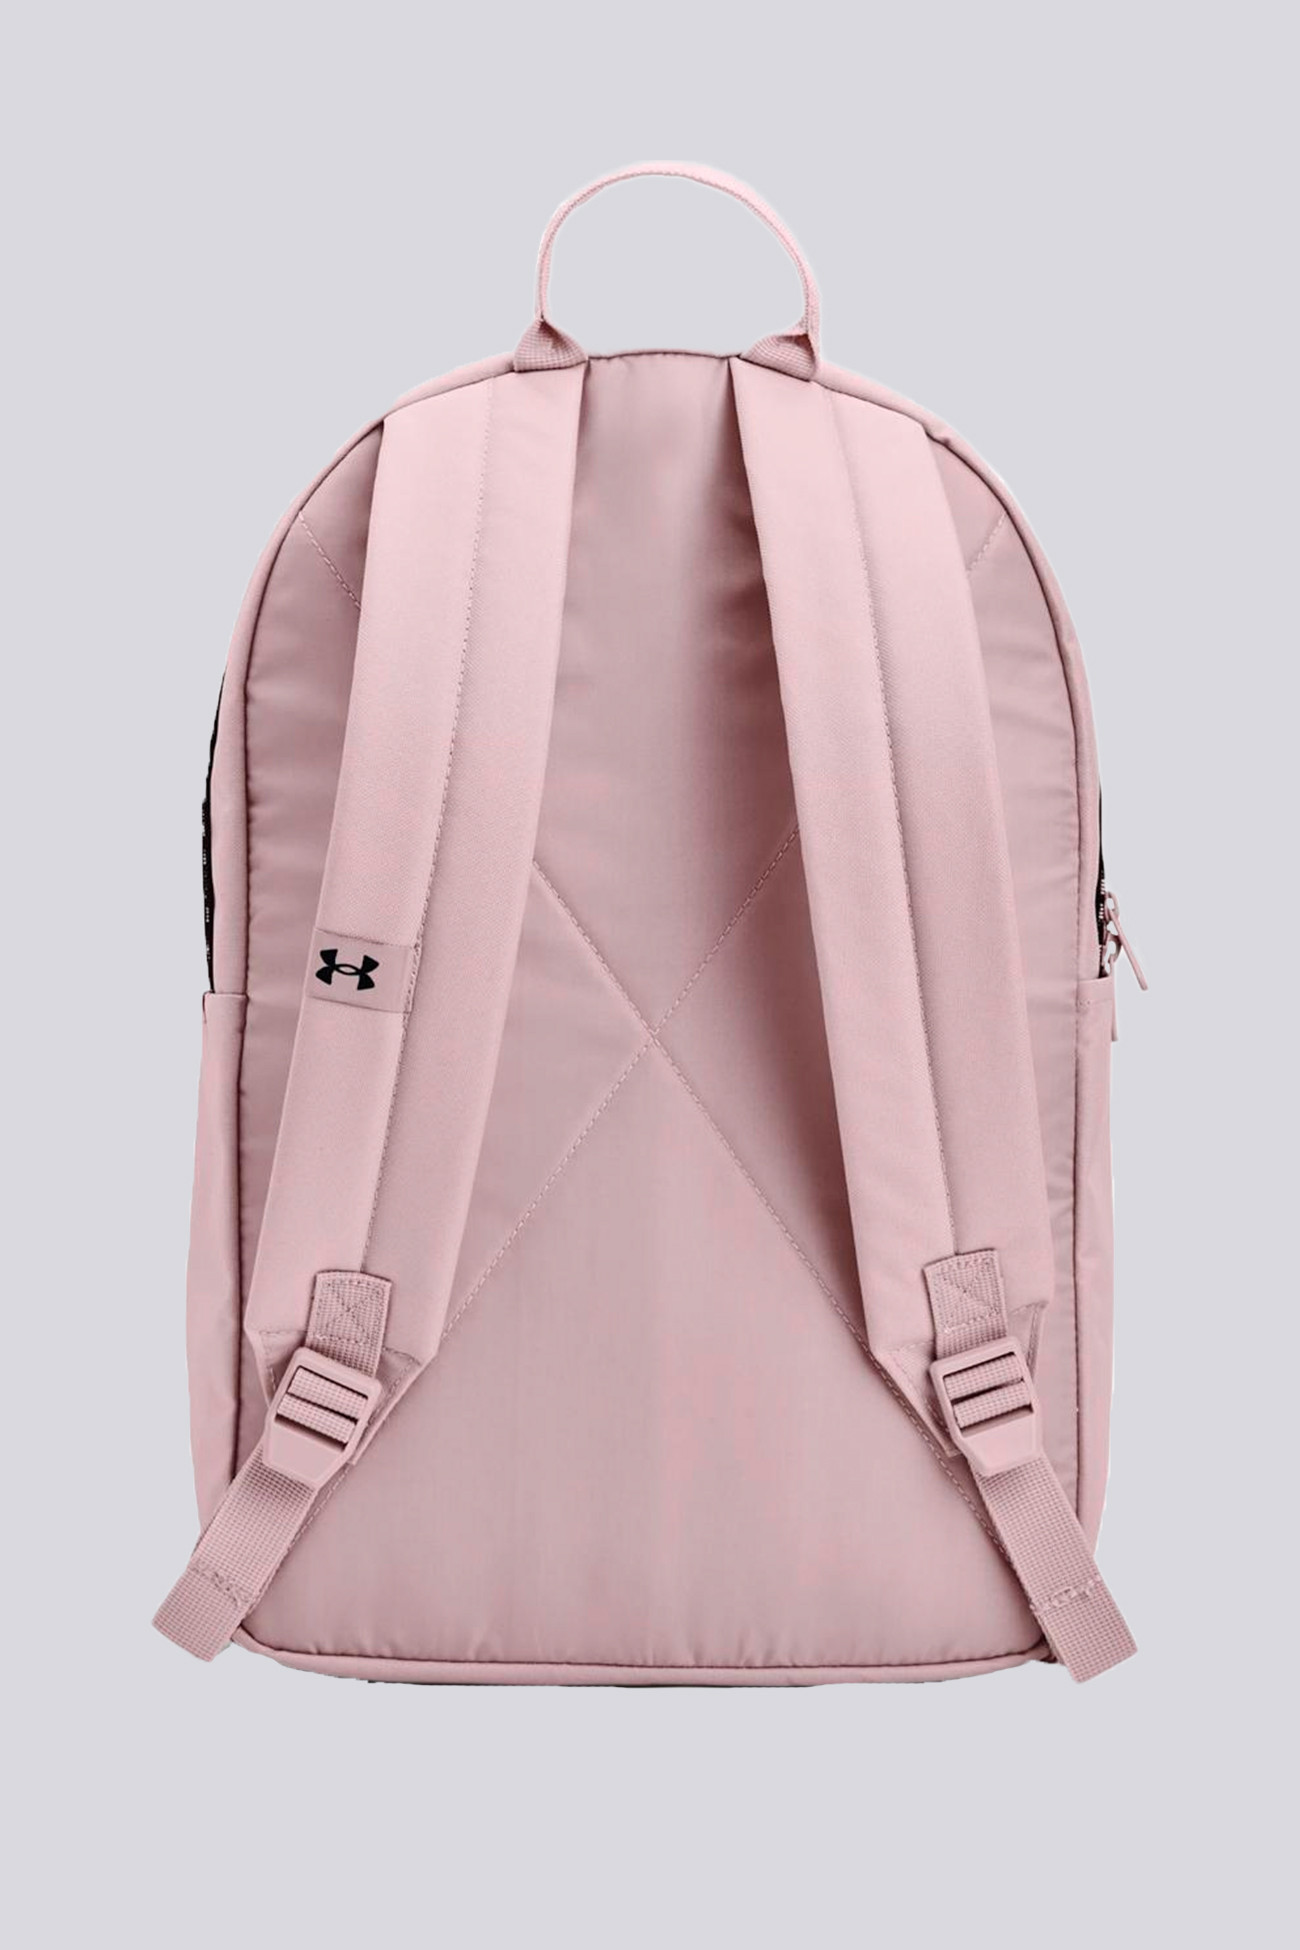 Рюкзак Under Armour Ua Loudon Backpack рожевий 1364186-667 изображение 4